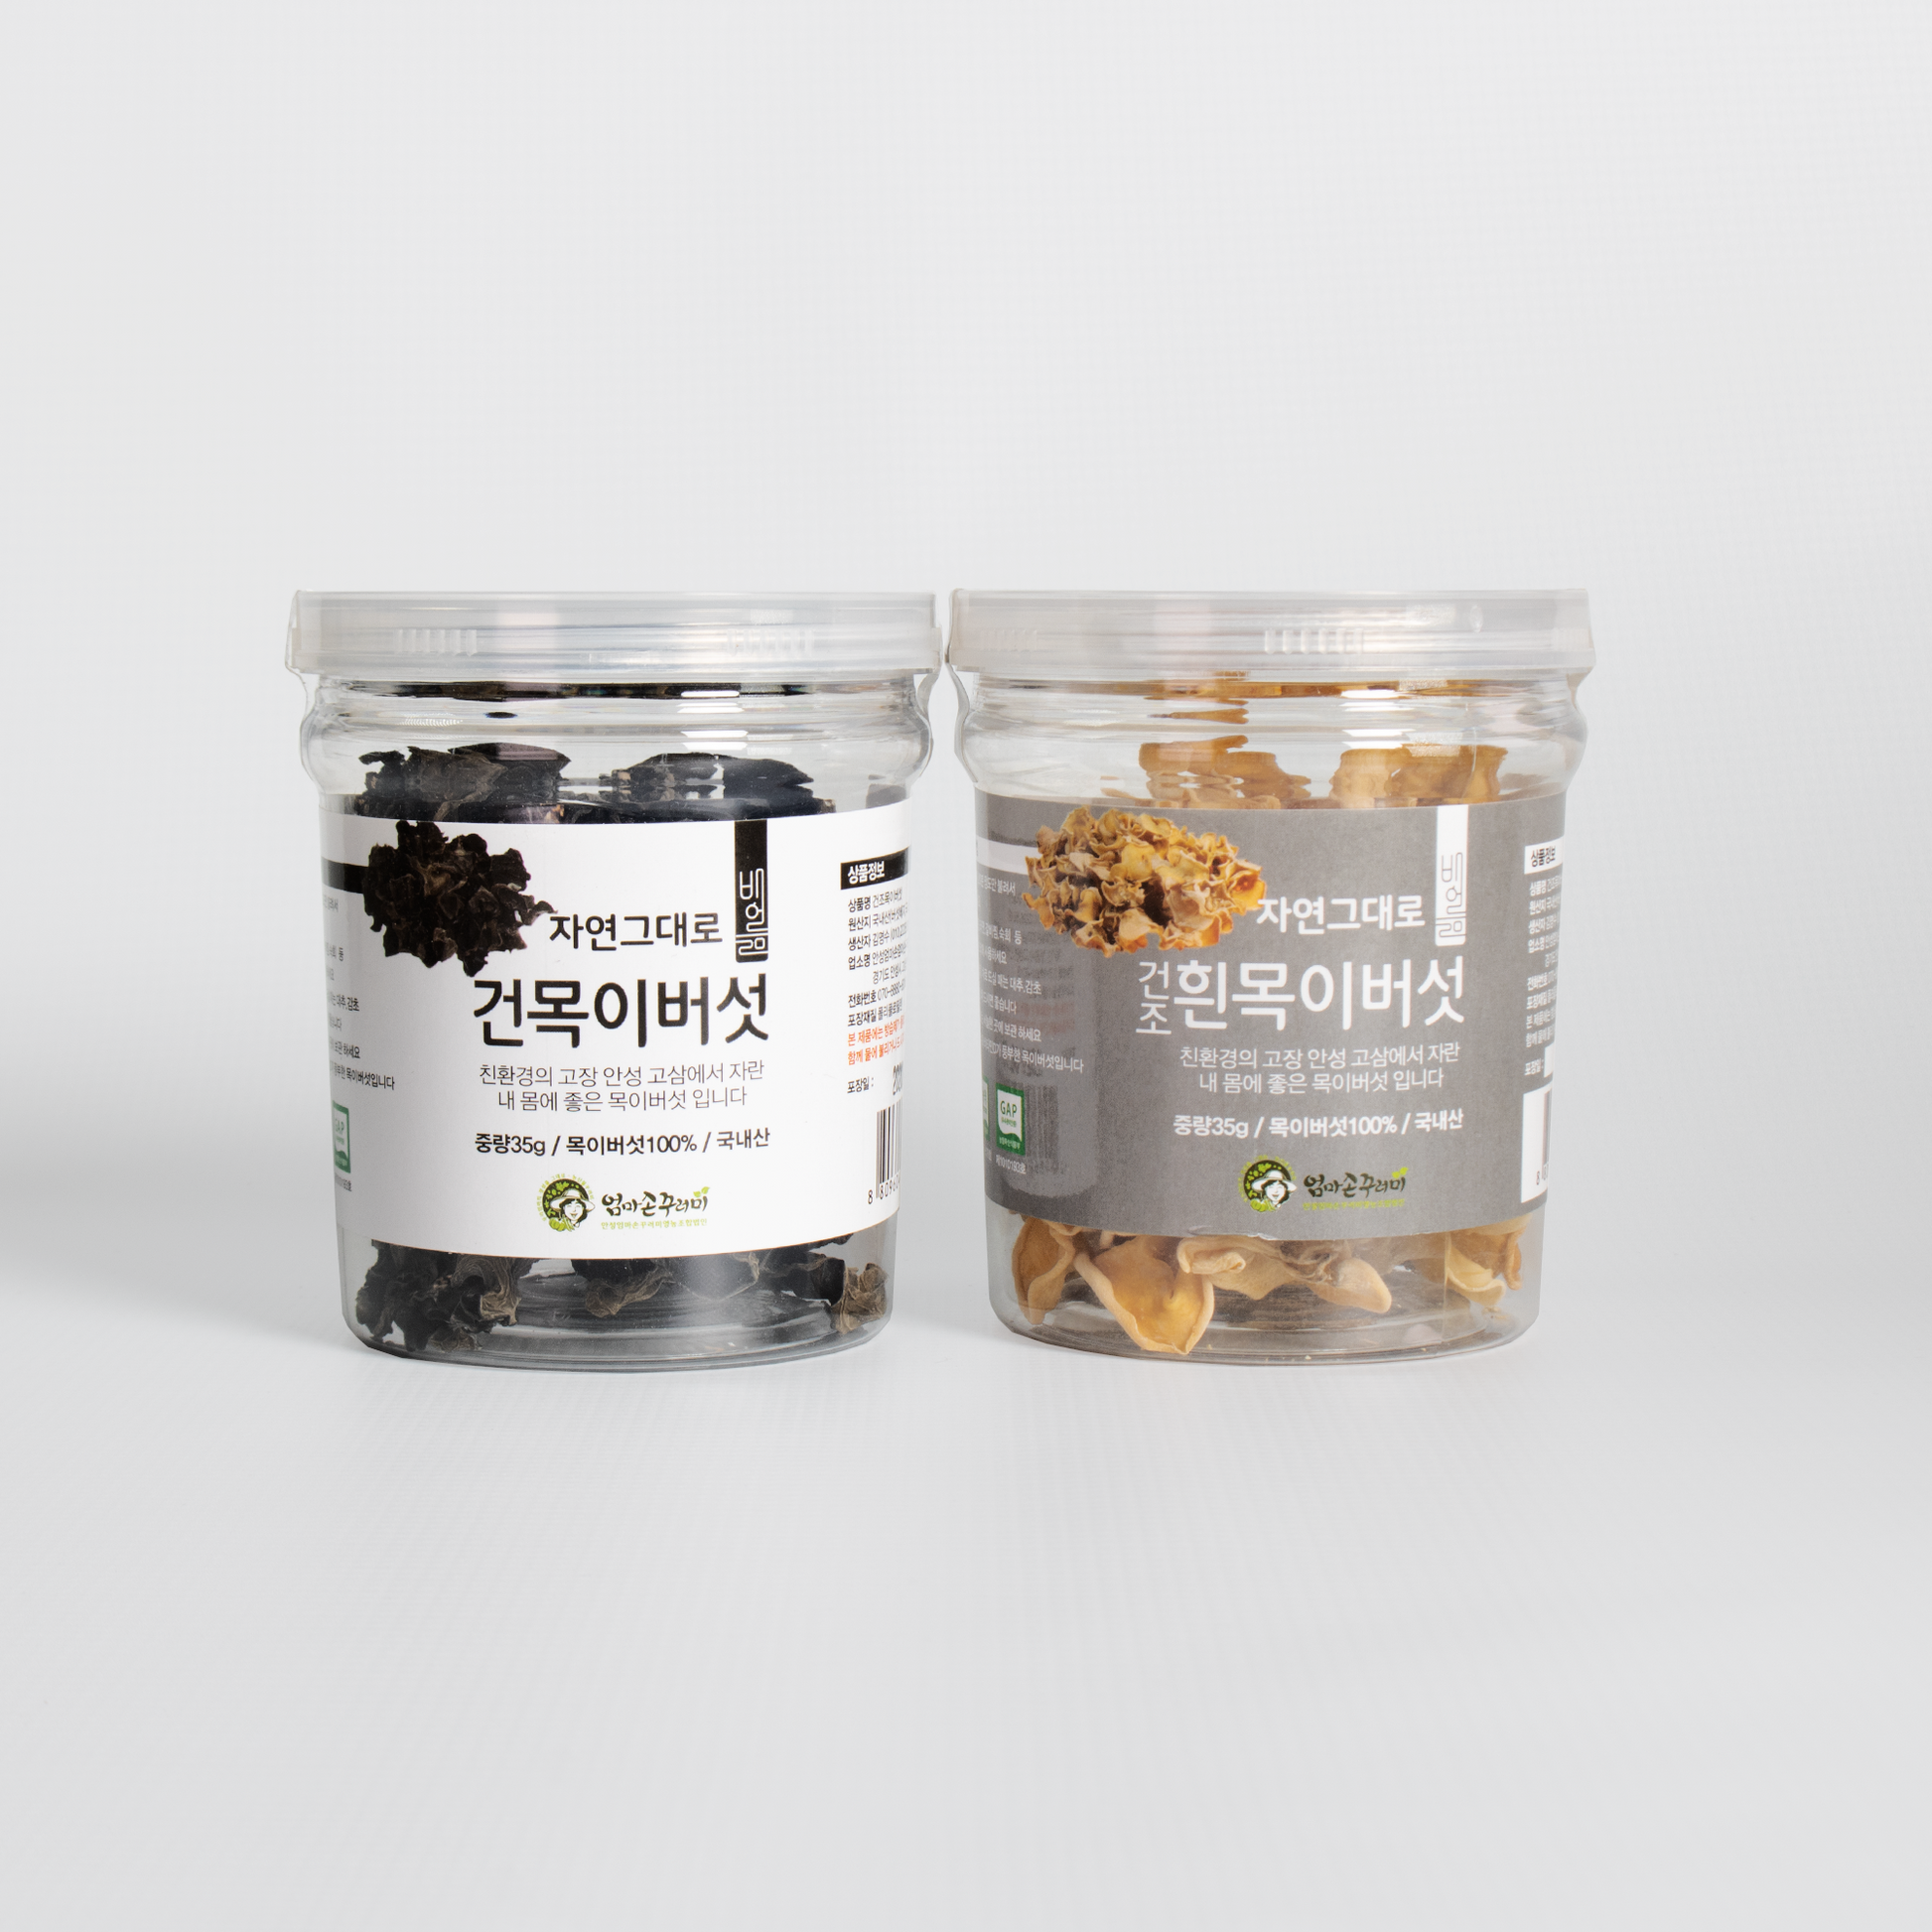 Dried Tree-Ear Mushroom (2 Kinds) - Kim'C Market